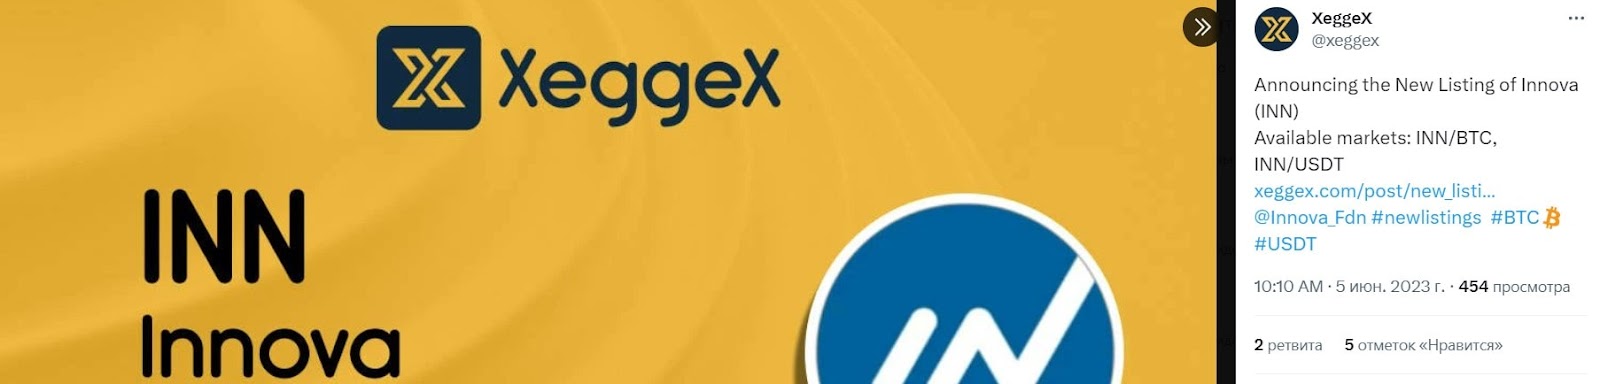 XeggeX: отзывы клиентов о работе компании в 2023 году